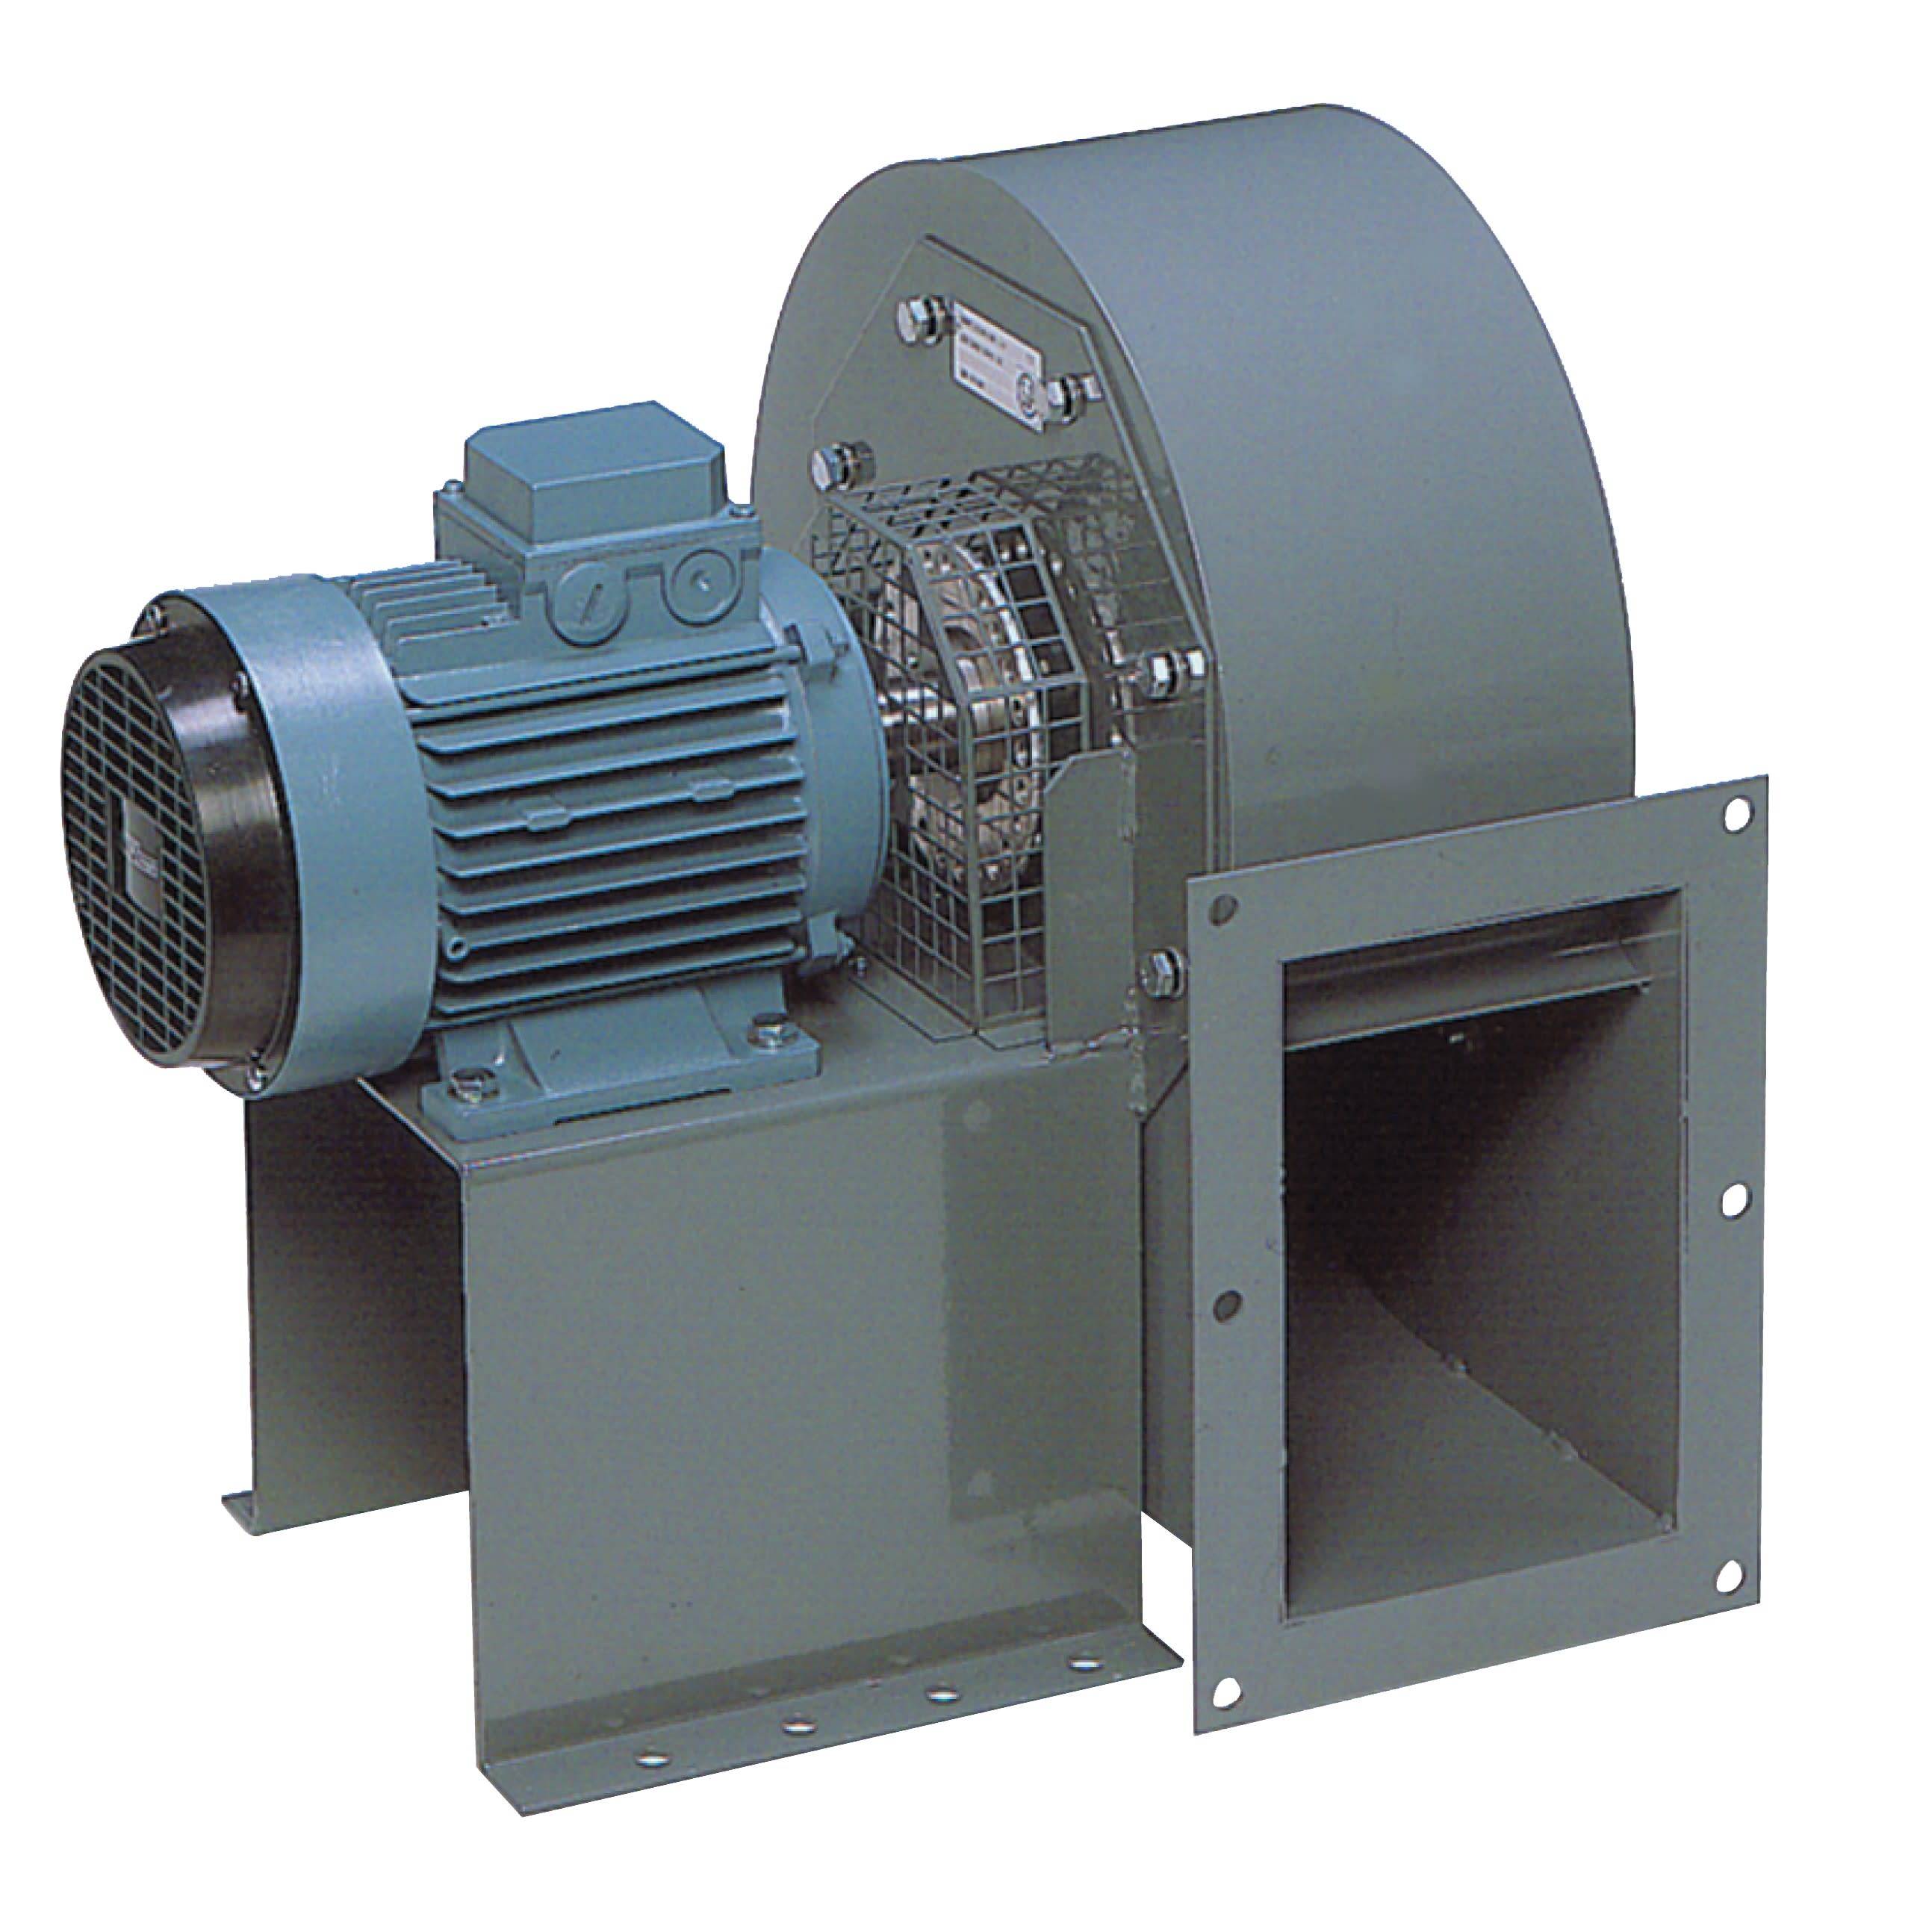 S&P - Ventilateur centrifuge haute température 300°C en continu, 8300 m3/h, 5,5 kW